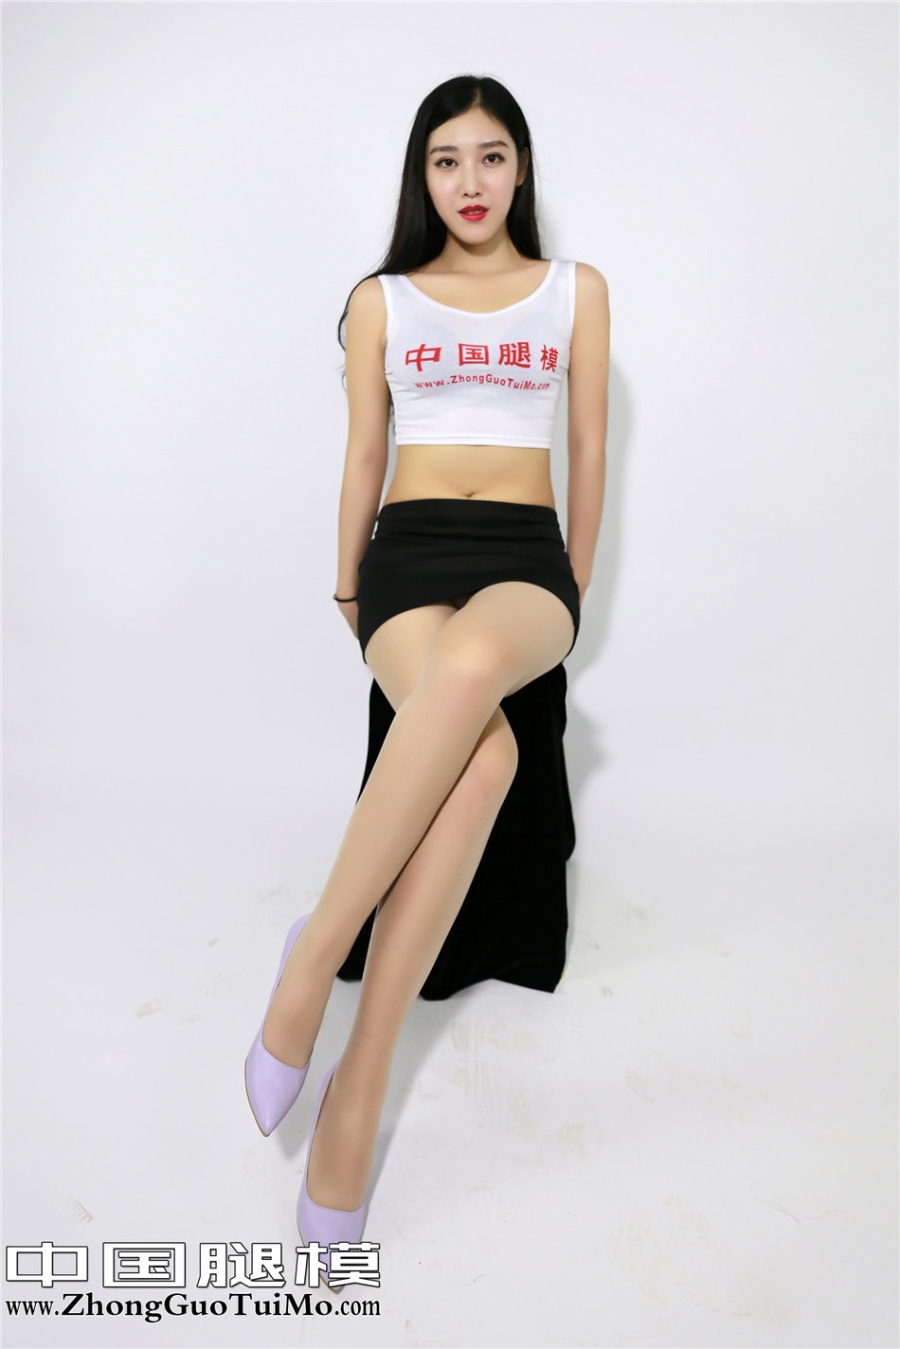 中国腿模美女小琦琦超短裙棚拍写真照片(第4页)